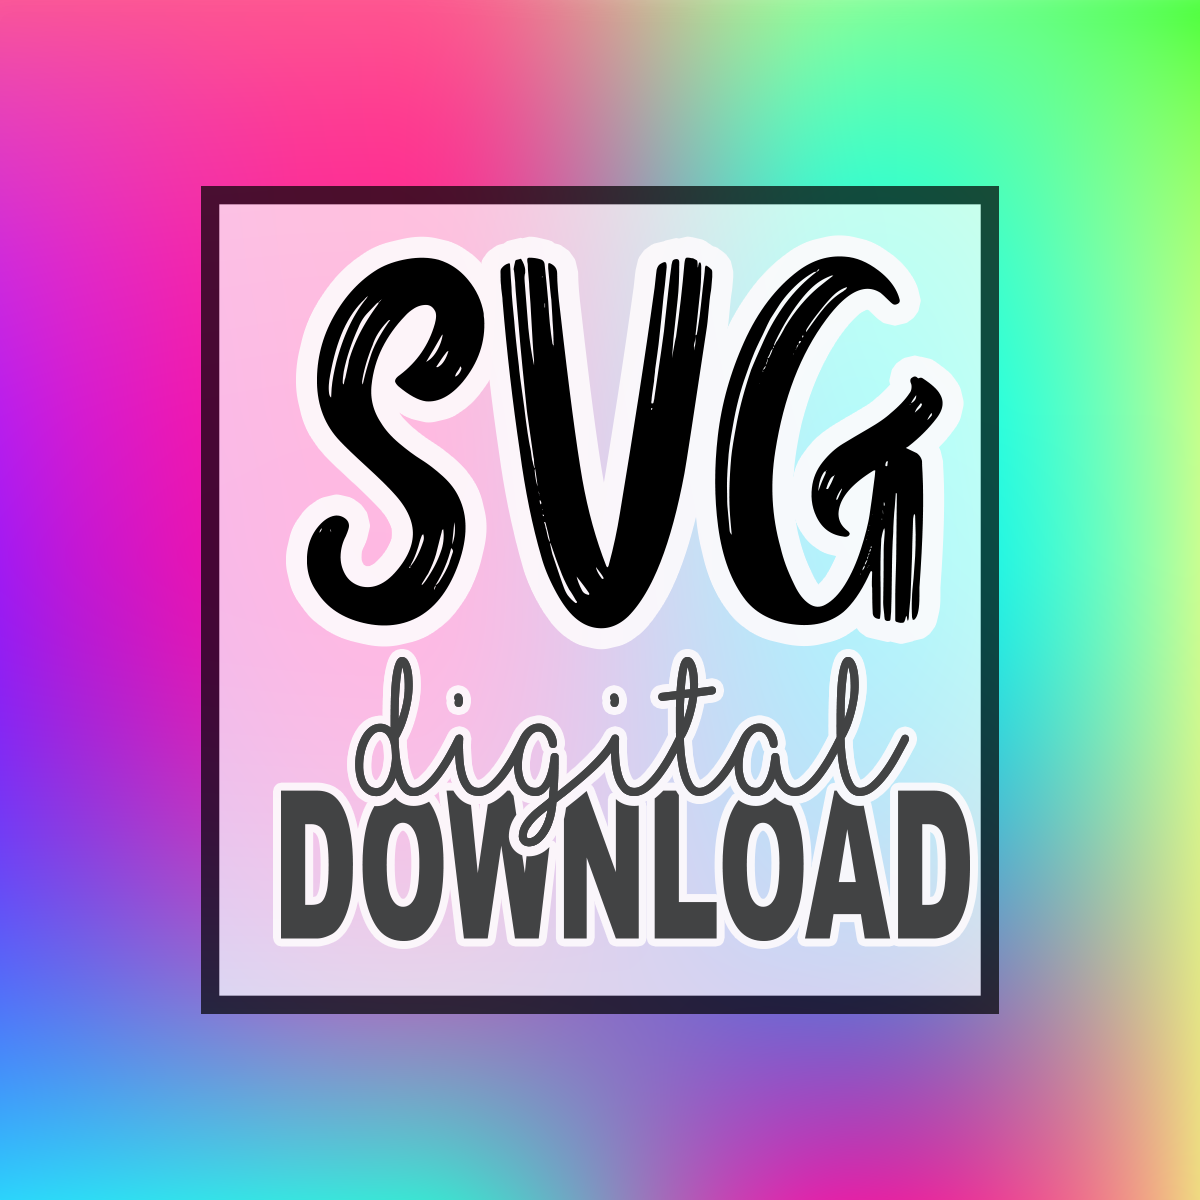 SVG File Downloads